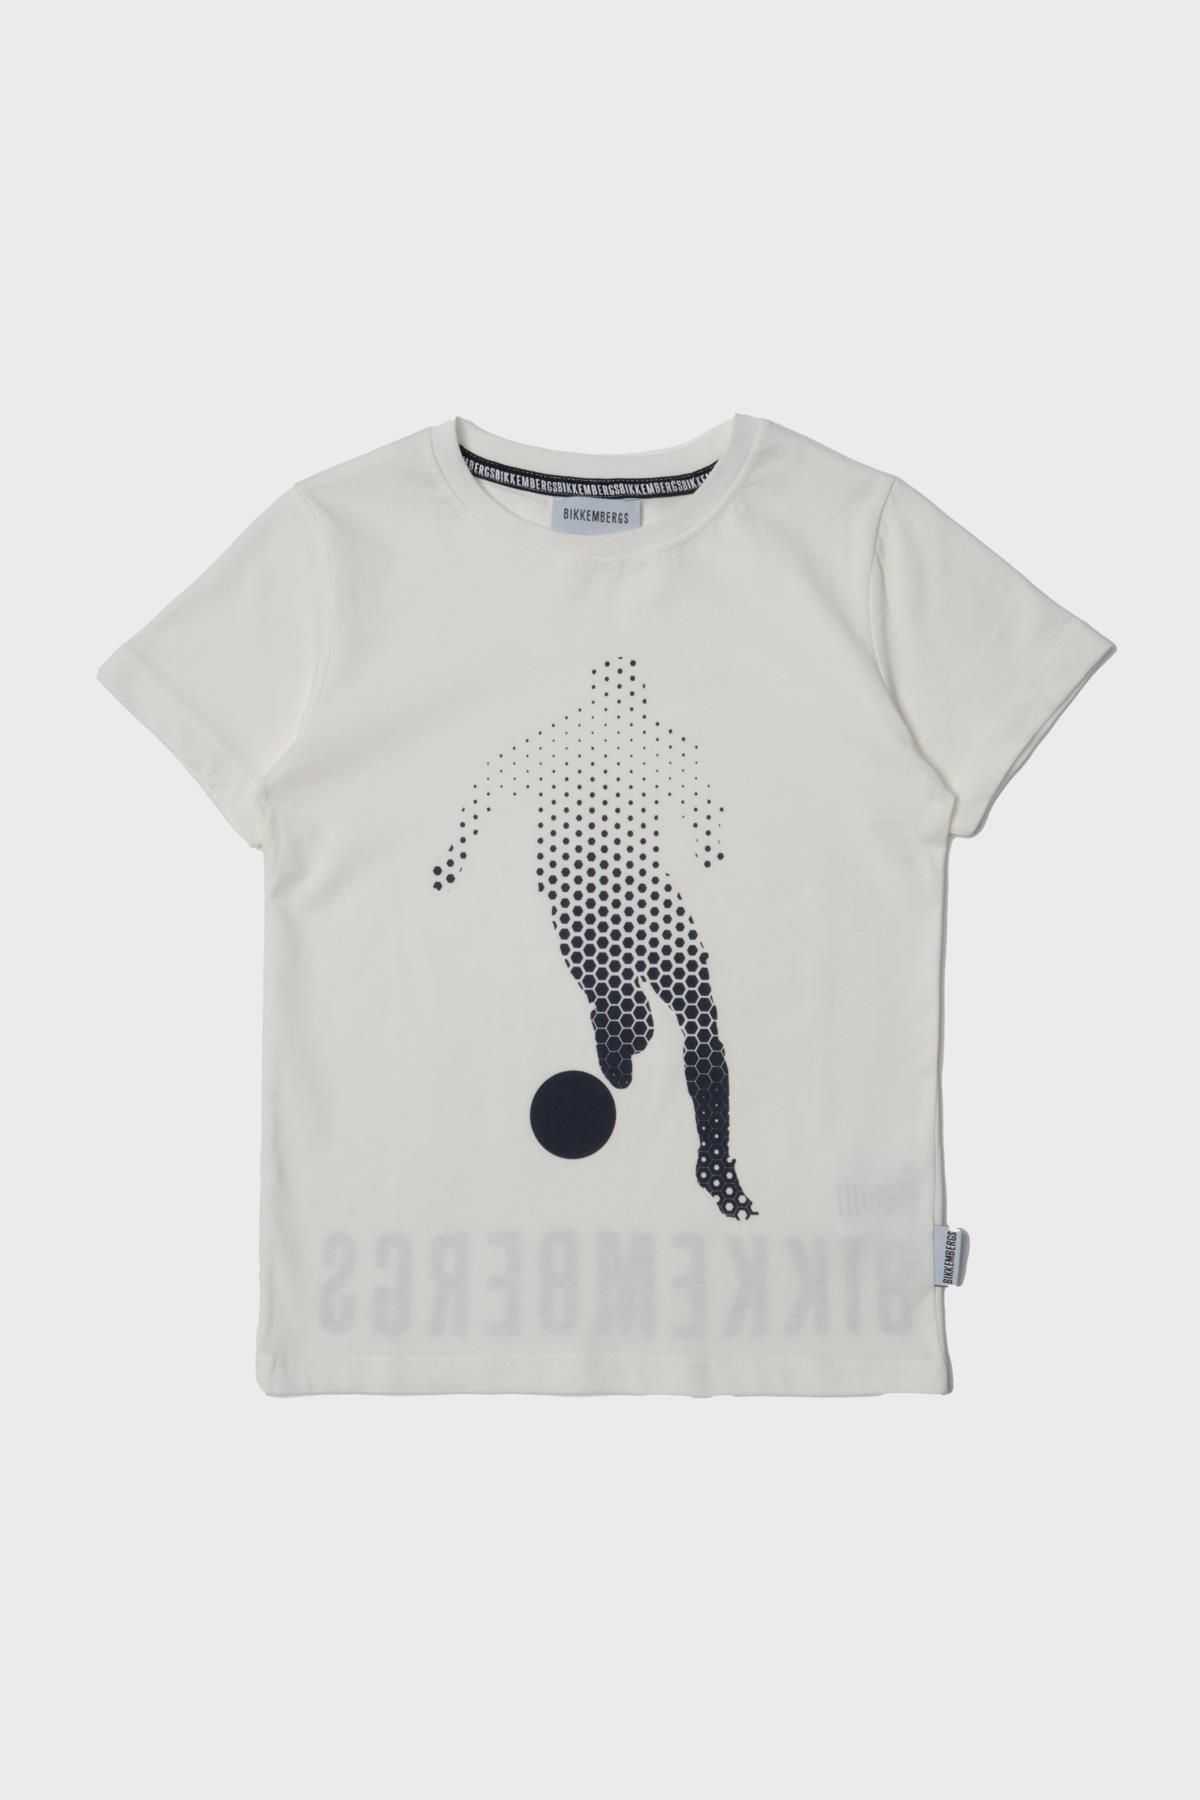 Bikkembergs Bg Store Erkek Çocuk Kırık Beyaz T-shirt 23ss1bk1614